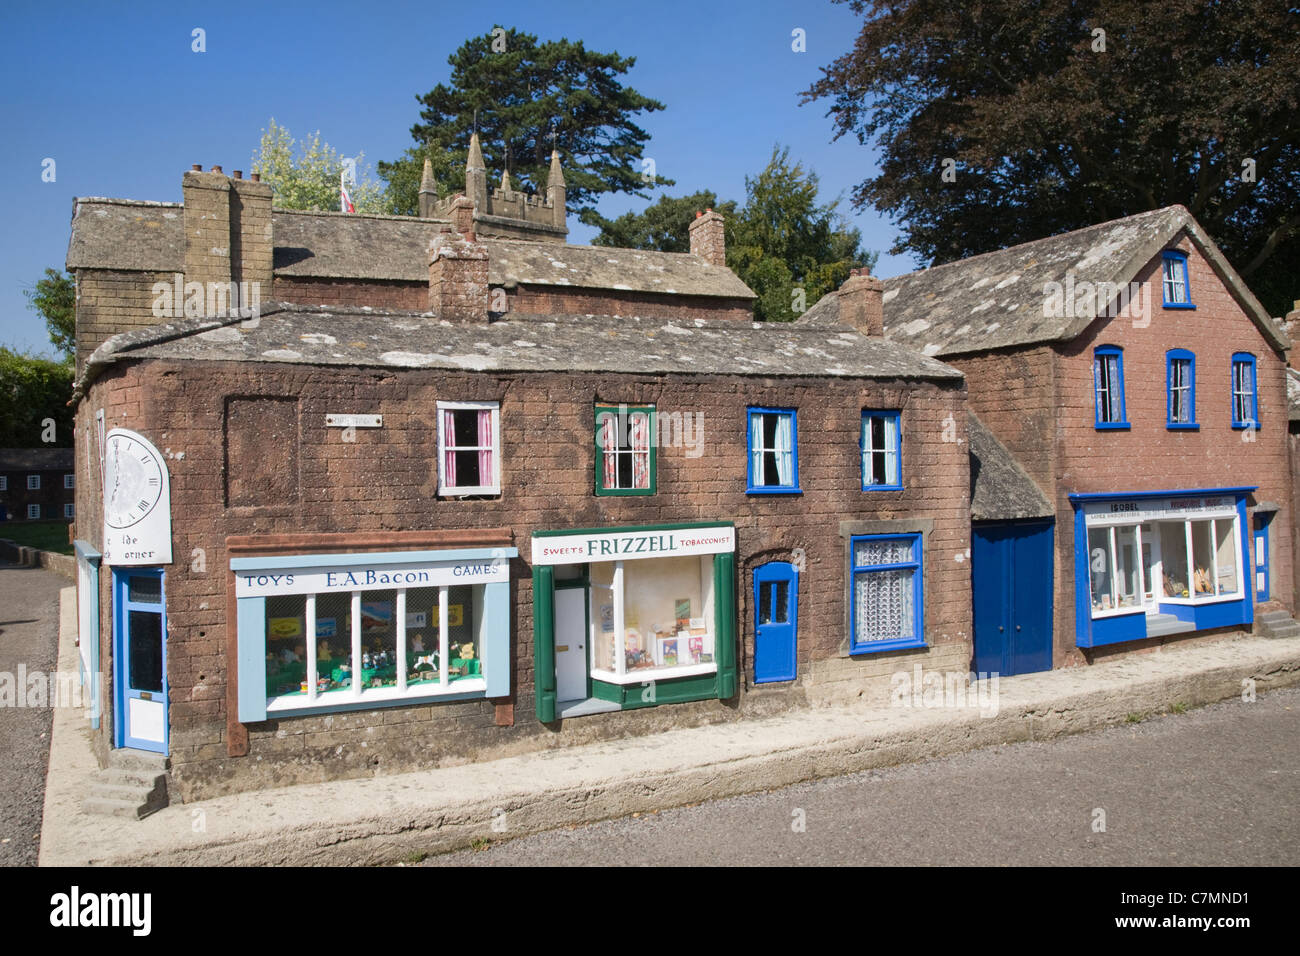 Model village, Wimborne Minster, Dorset Stock Photo